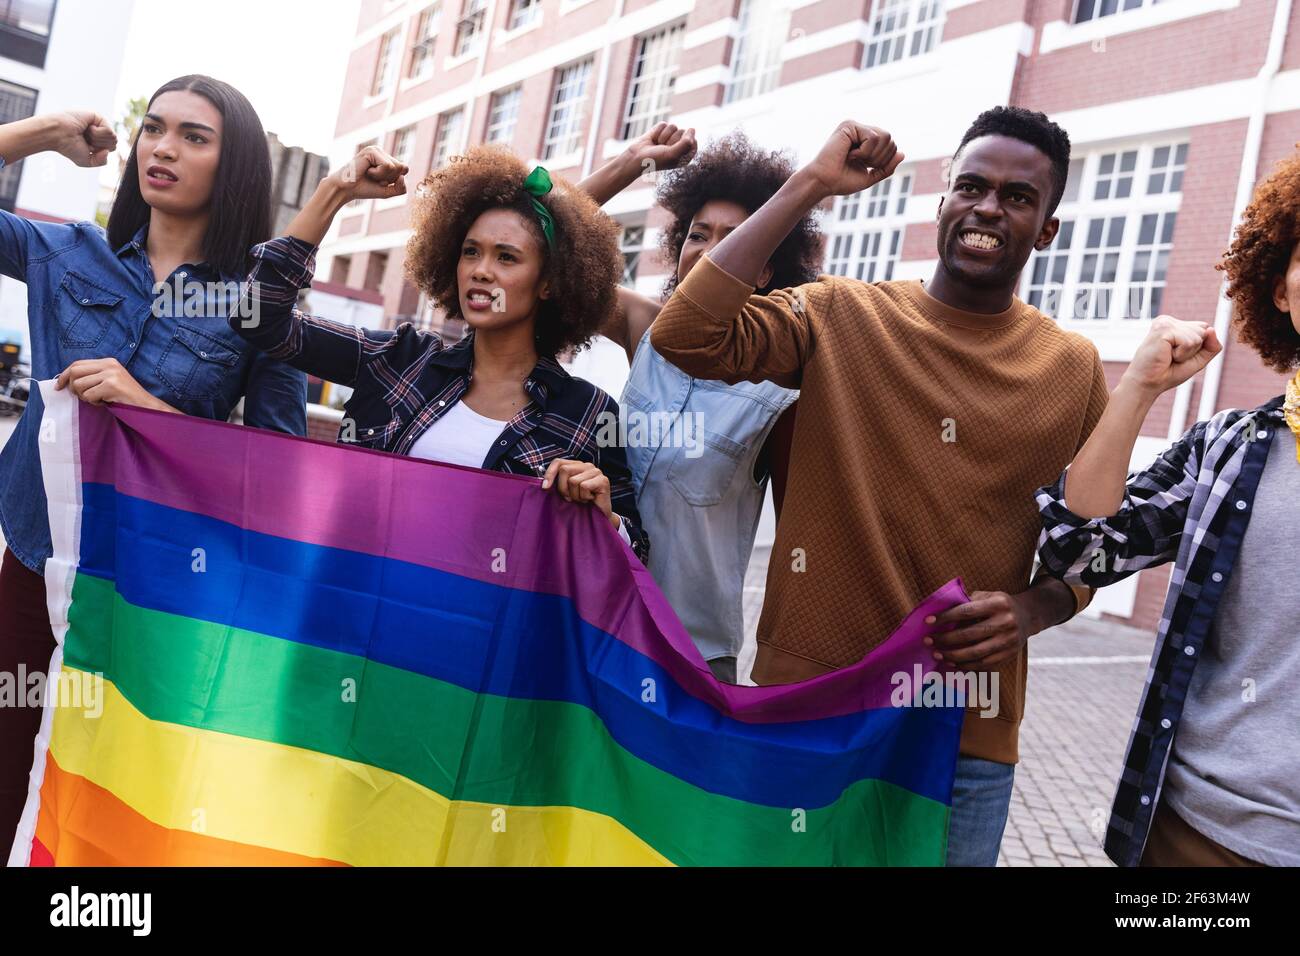 Verschiedene männliche und weibliche Demonstranten hielten am marsch Regenbogenfahne, riefen und rafften Fäuste Stockfoto